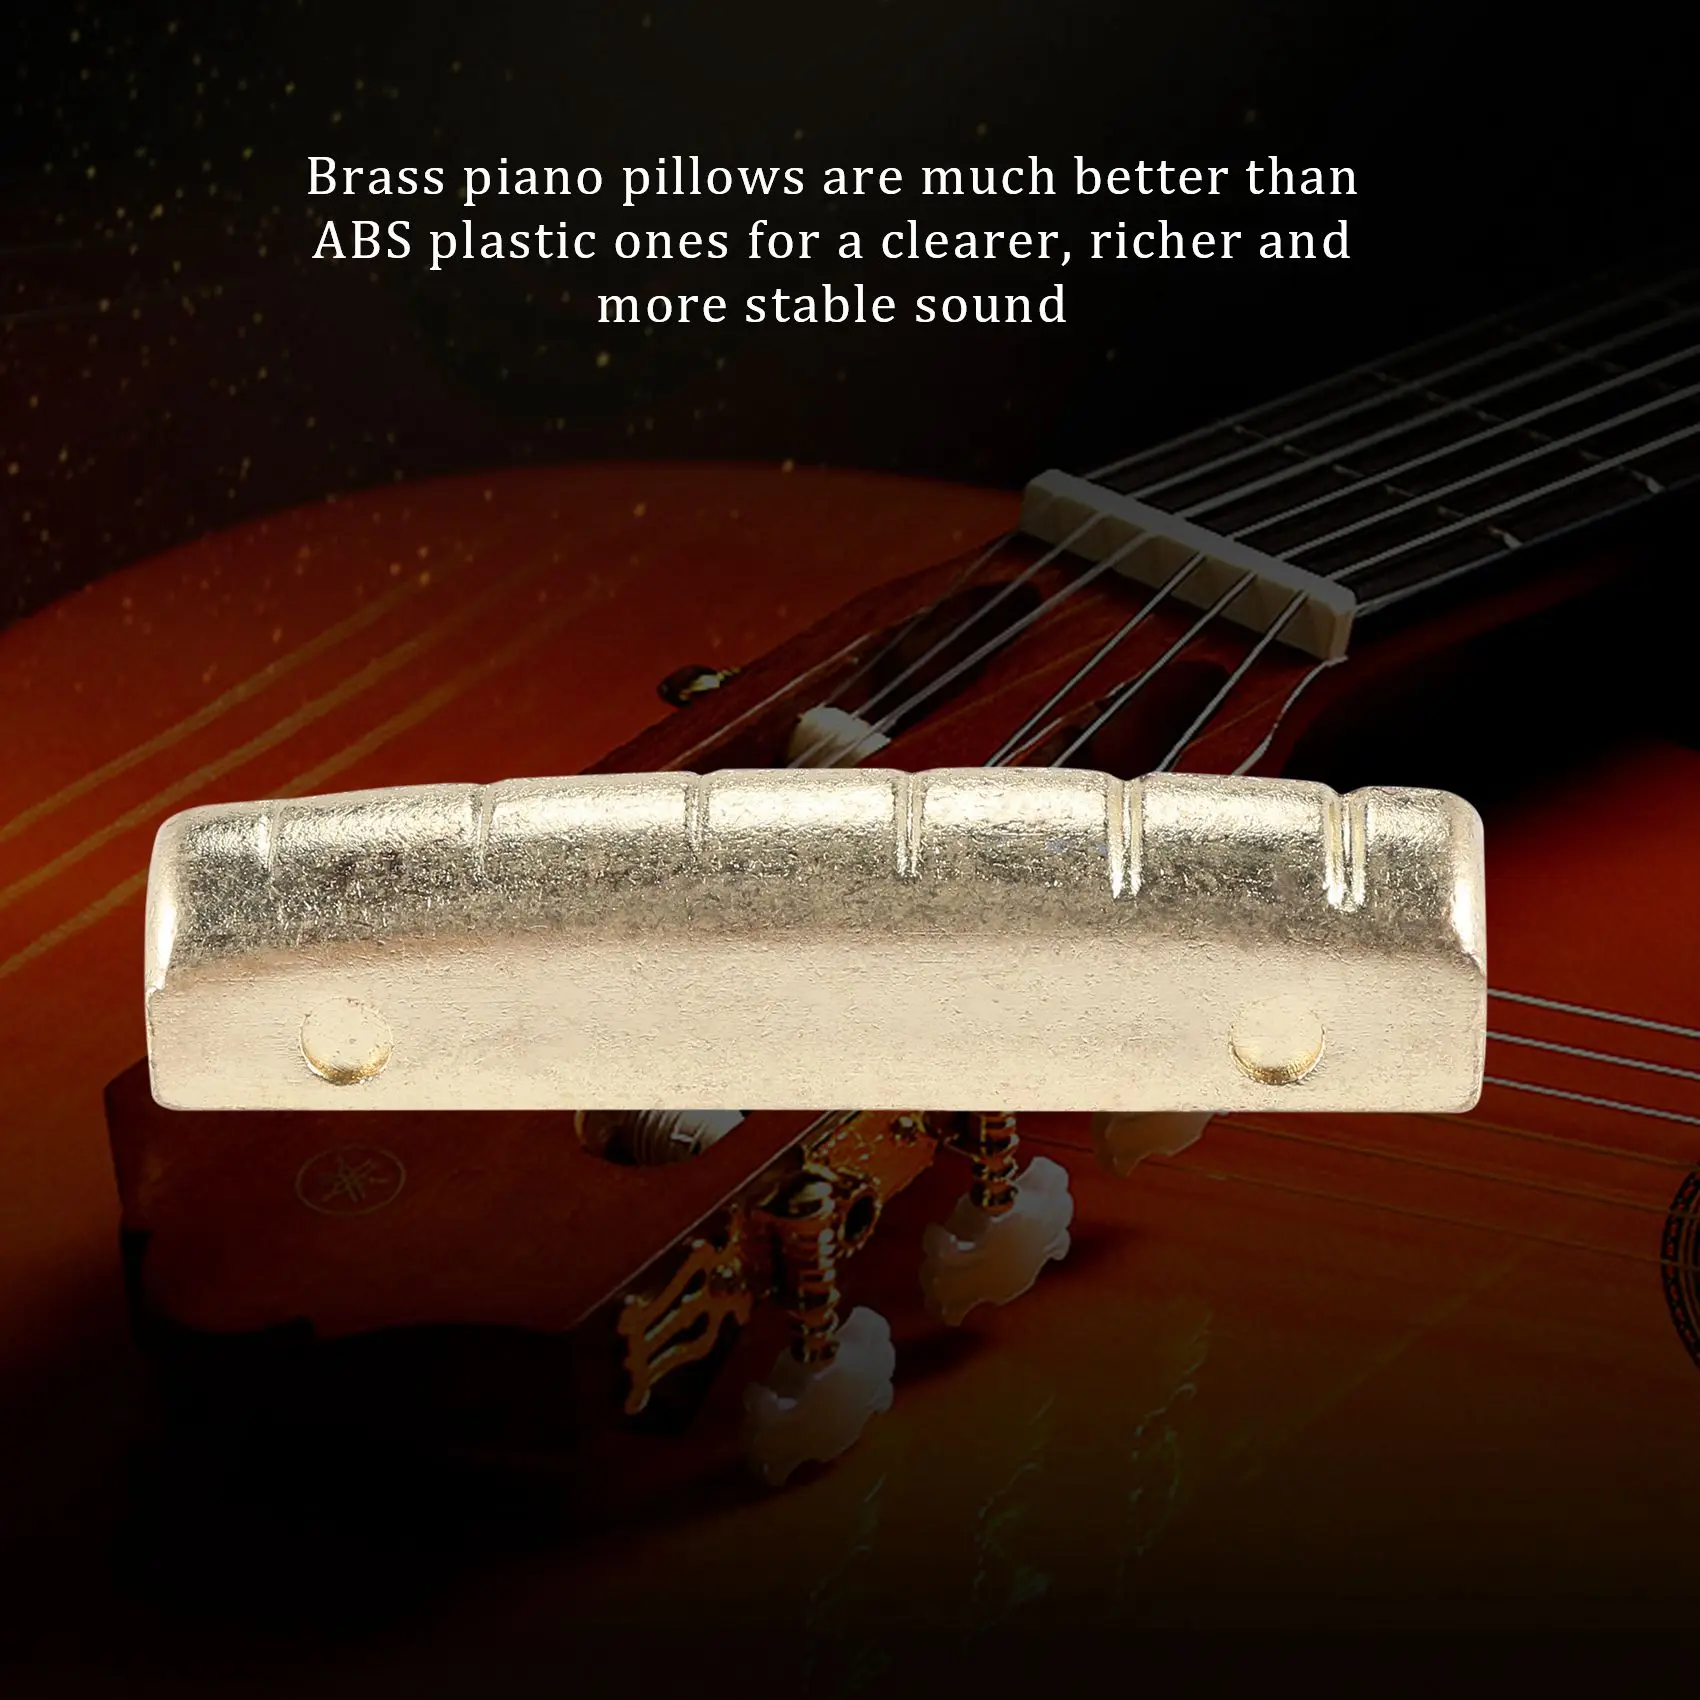 6 шт. гитарных латунных мостовых штифтов Седловая гайка для акустической гитары